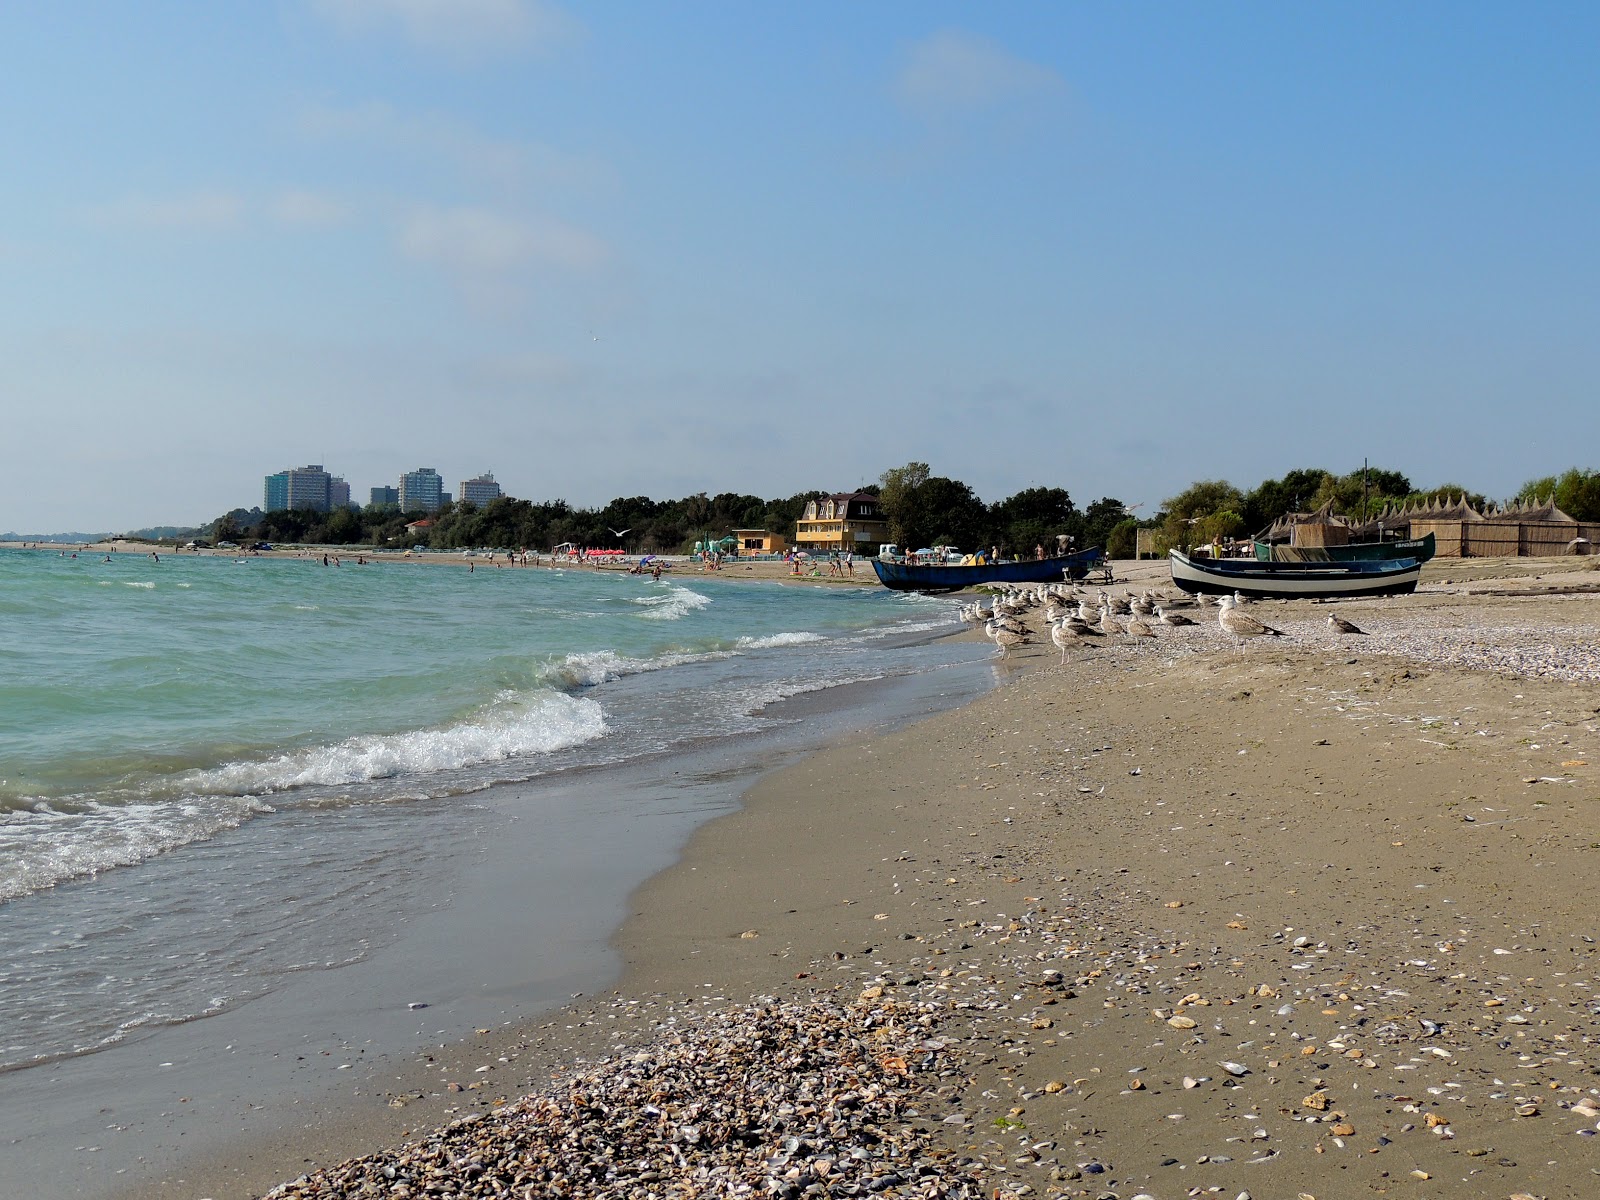 Photo of Copahavana beach beach resort area